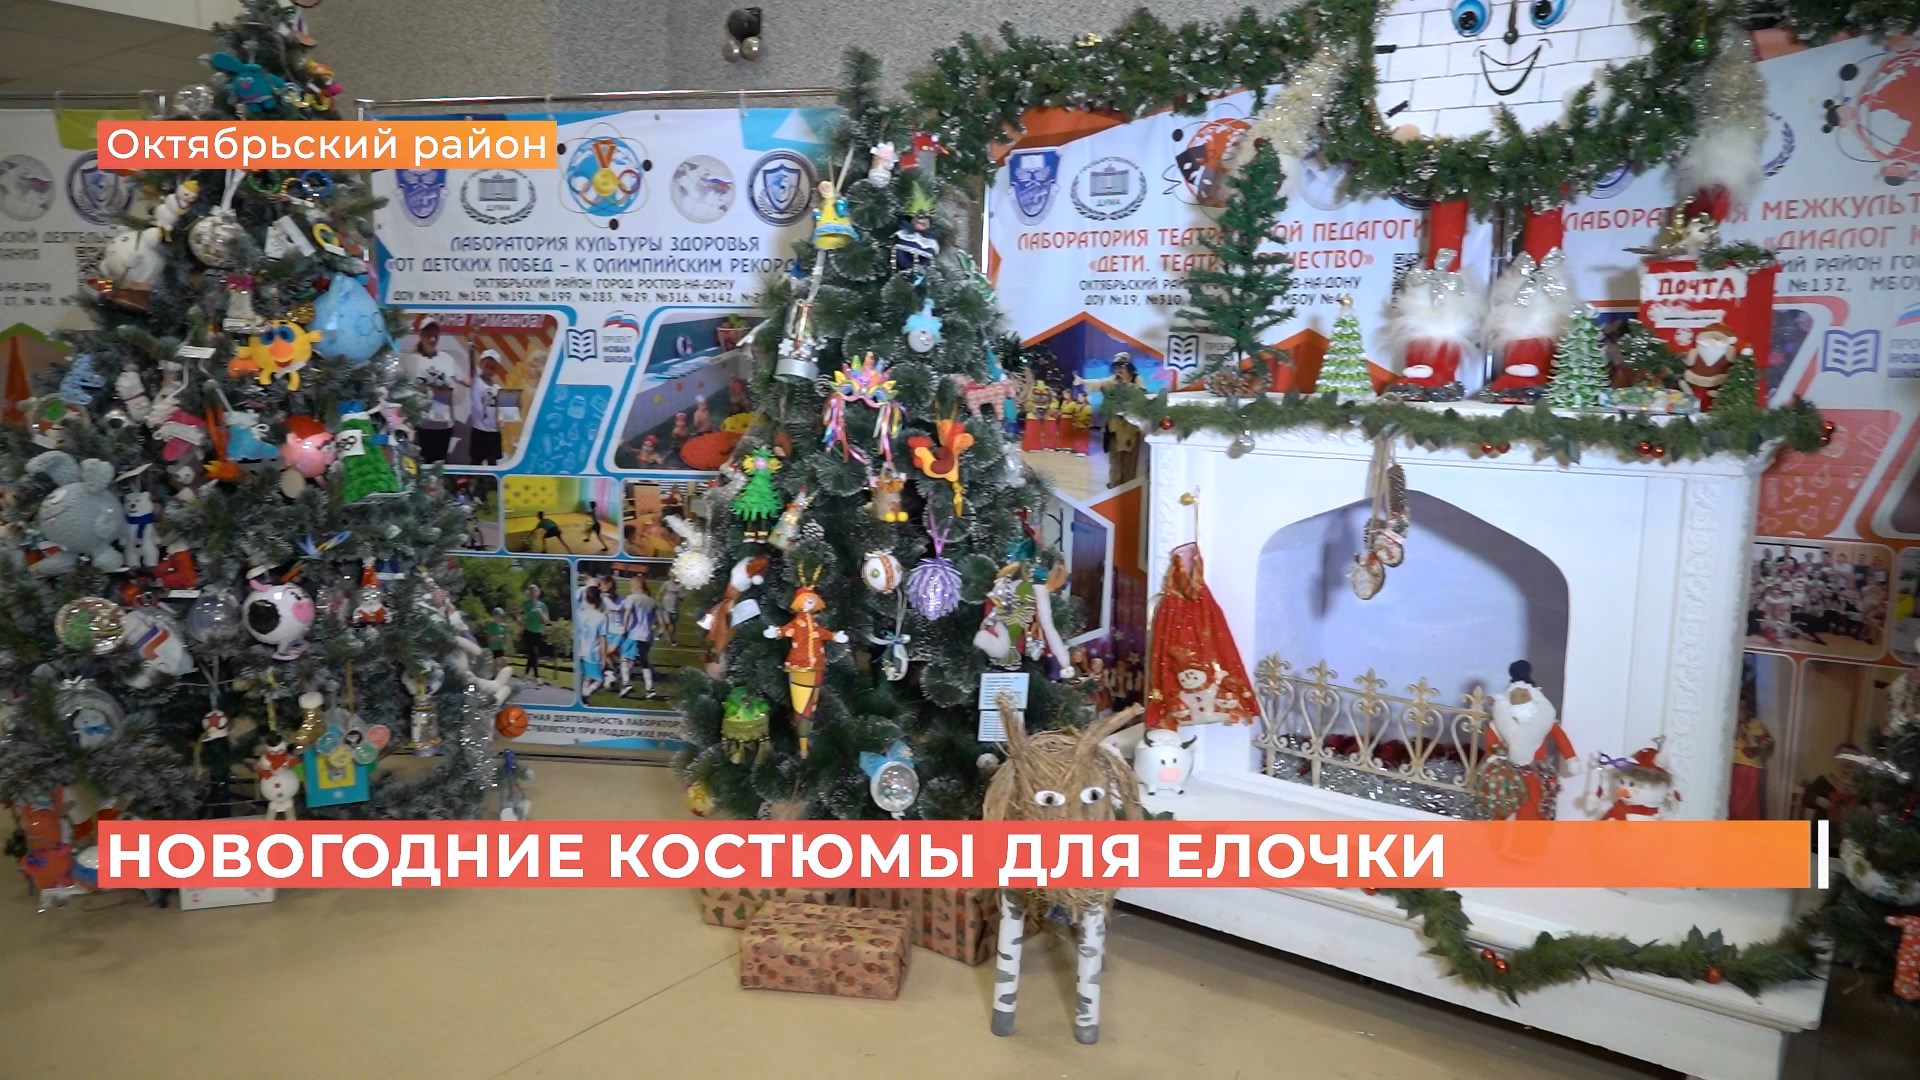 20 стран прислали игрушки: конкурс самых необычных ёлок прошел в Ростове